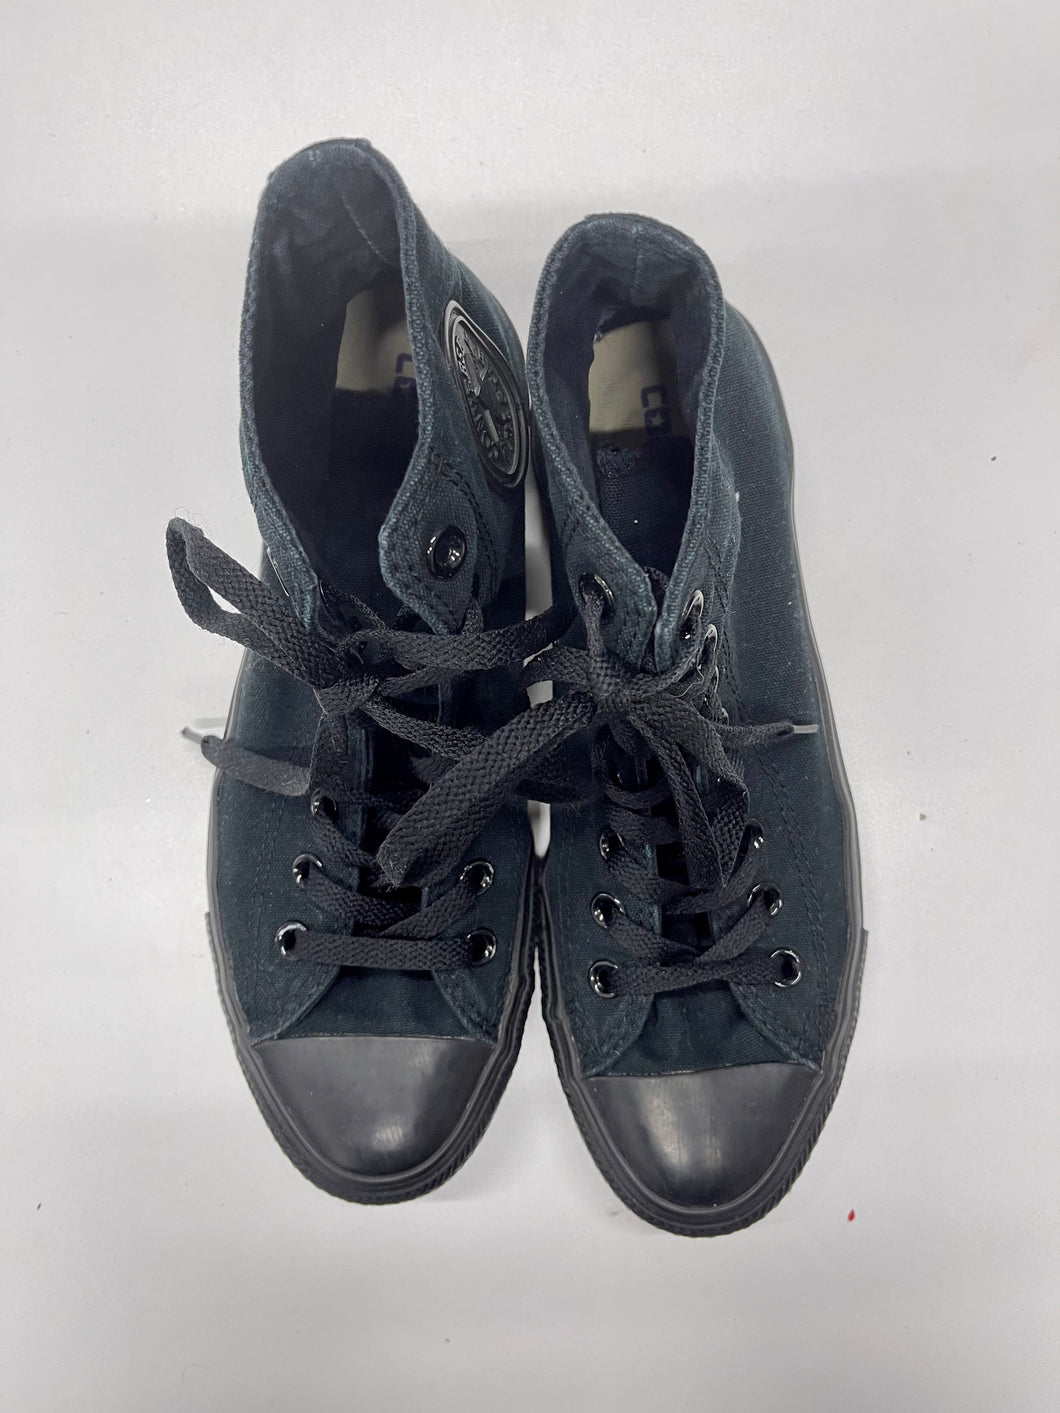 Men's / Women's Converse Shoes, Men's 7.5, Women's 9.5